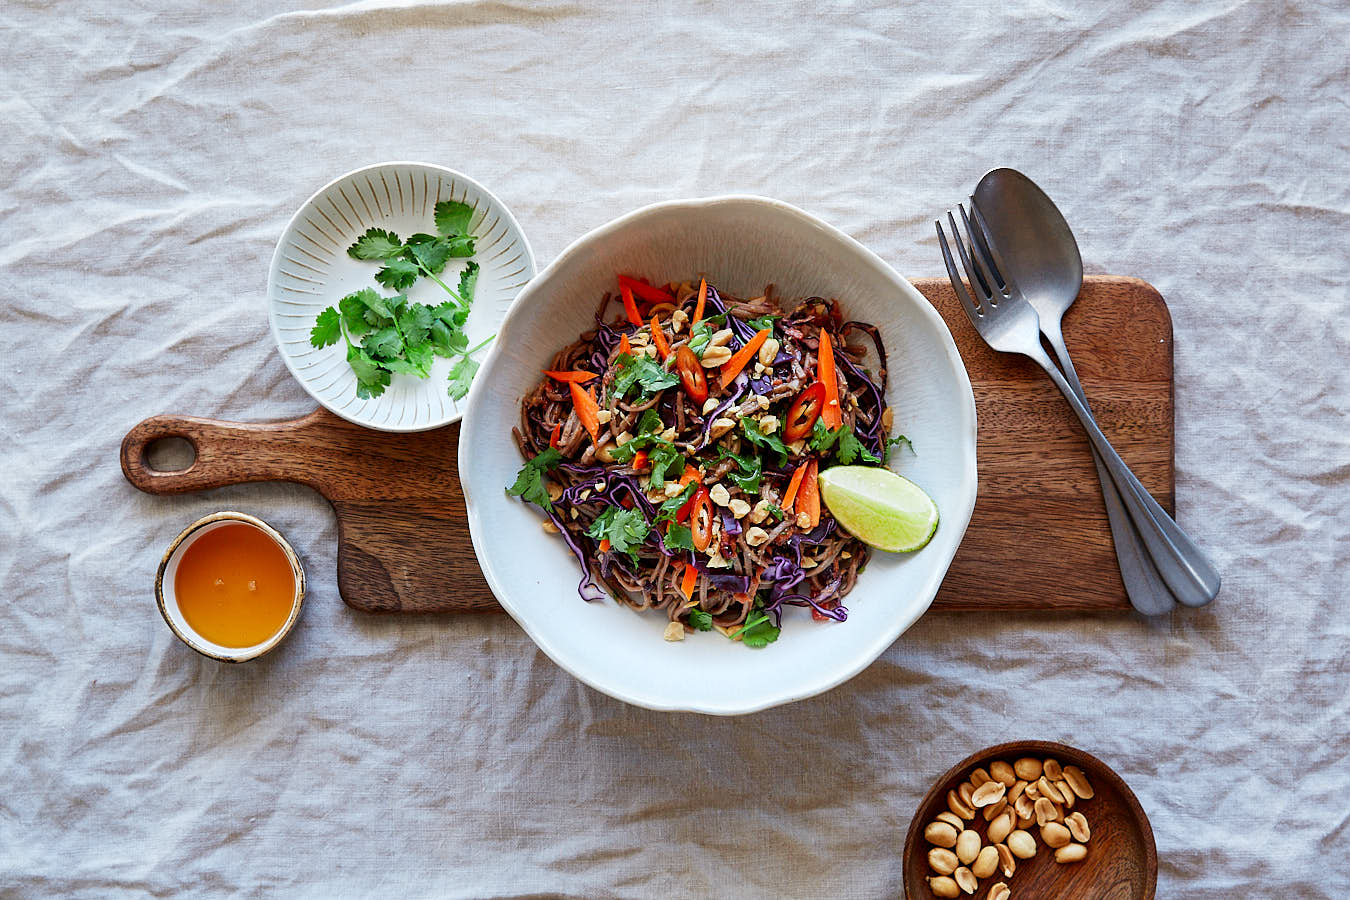 Food Foto von Thai-Nudel-Salat in weißer Schüssel auf Holzbrett mit Besteck und einzelnen Zutaten daneben